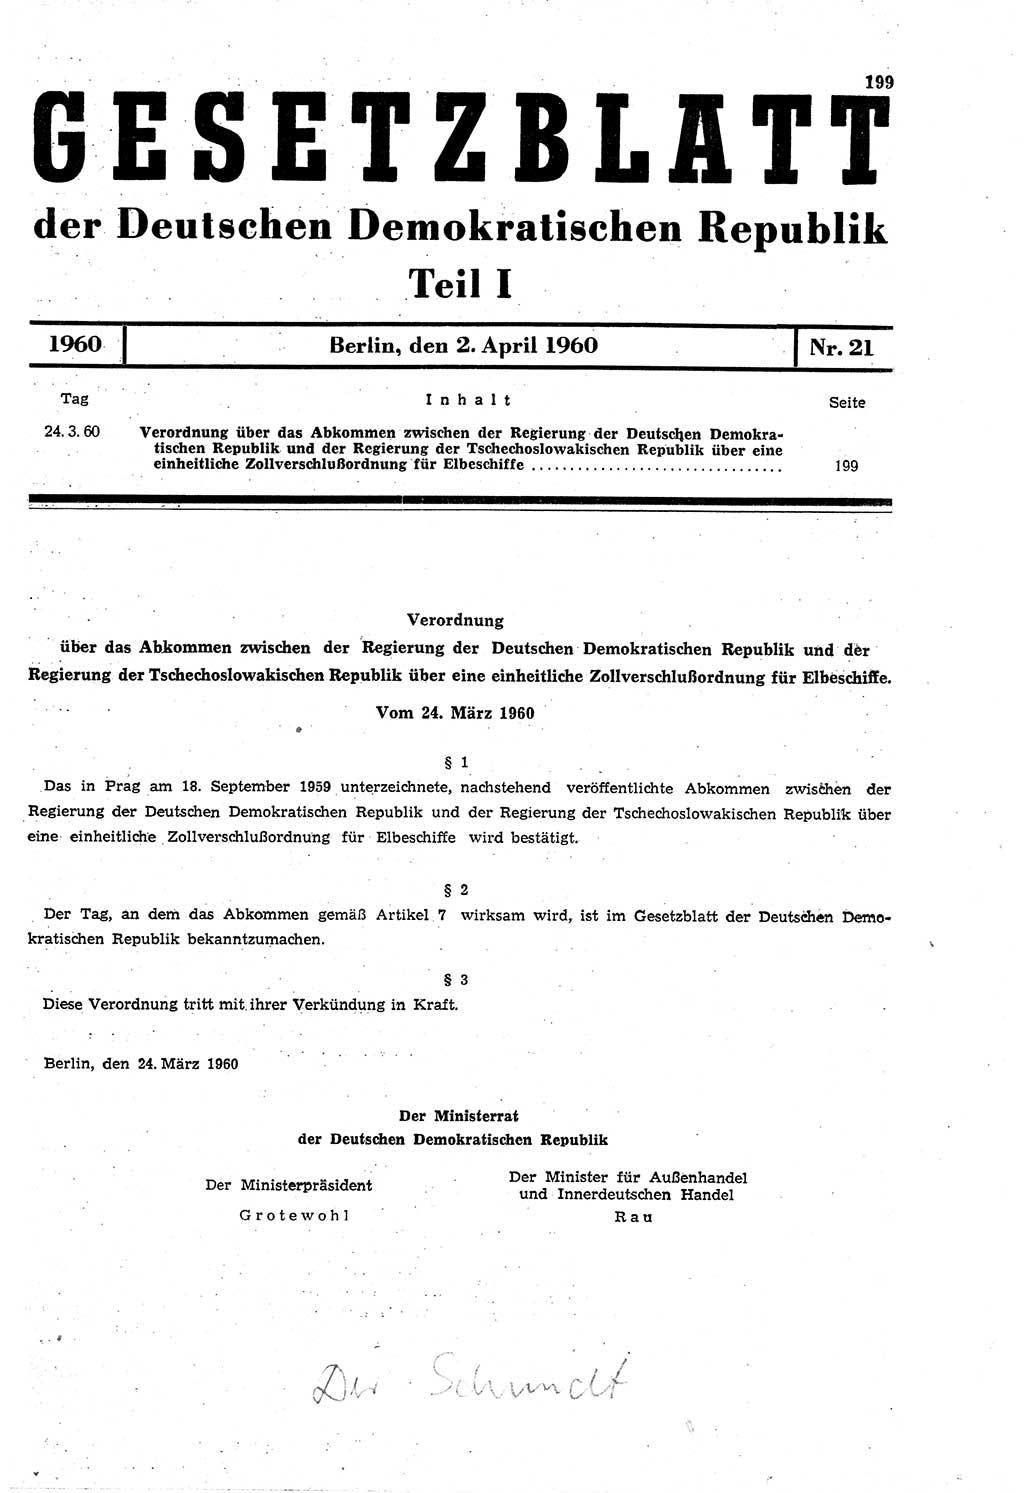 Gesetzblatt (GBl.) der Deutschen Demokratischen Republik (DDR) Teil Ⅰ 1960, Seite 199 (GBl. DDR Ⅰ 1960, S. 199)